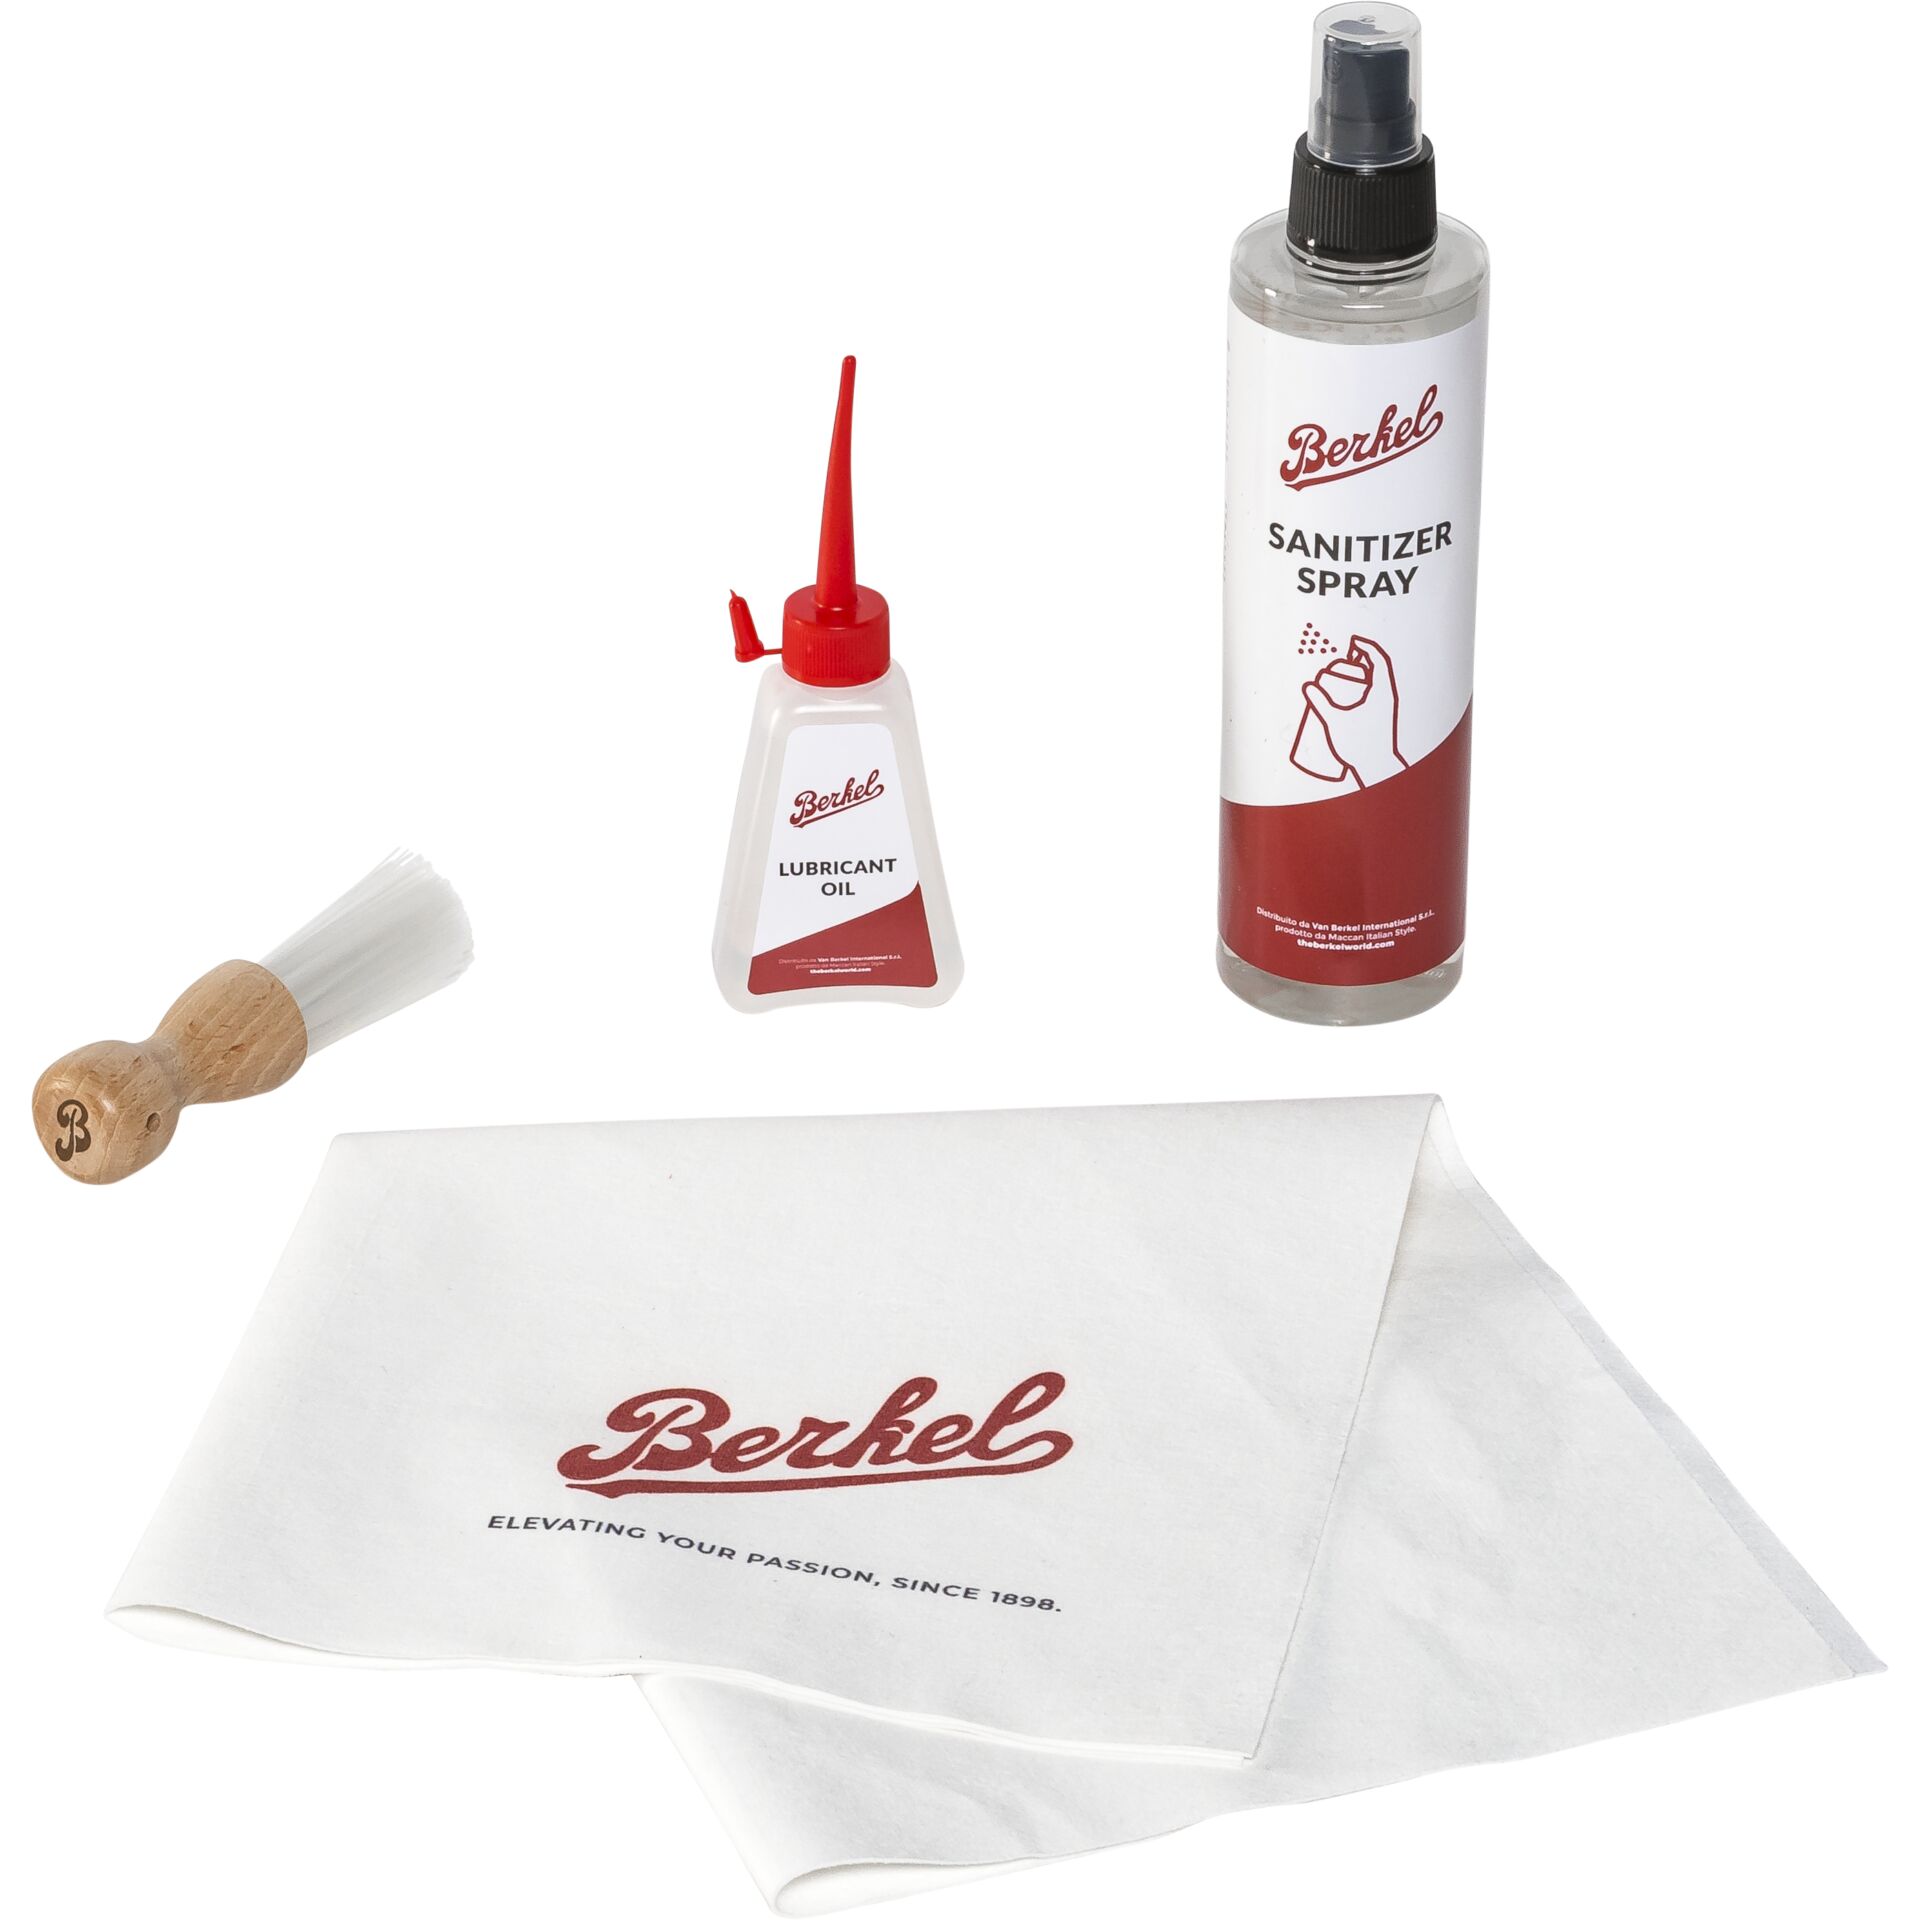 Berkel Cleaning Kit